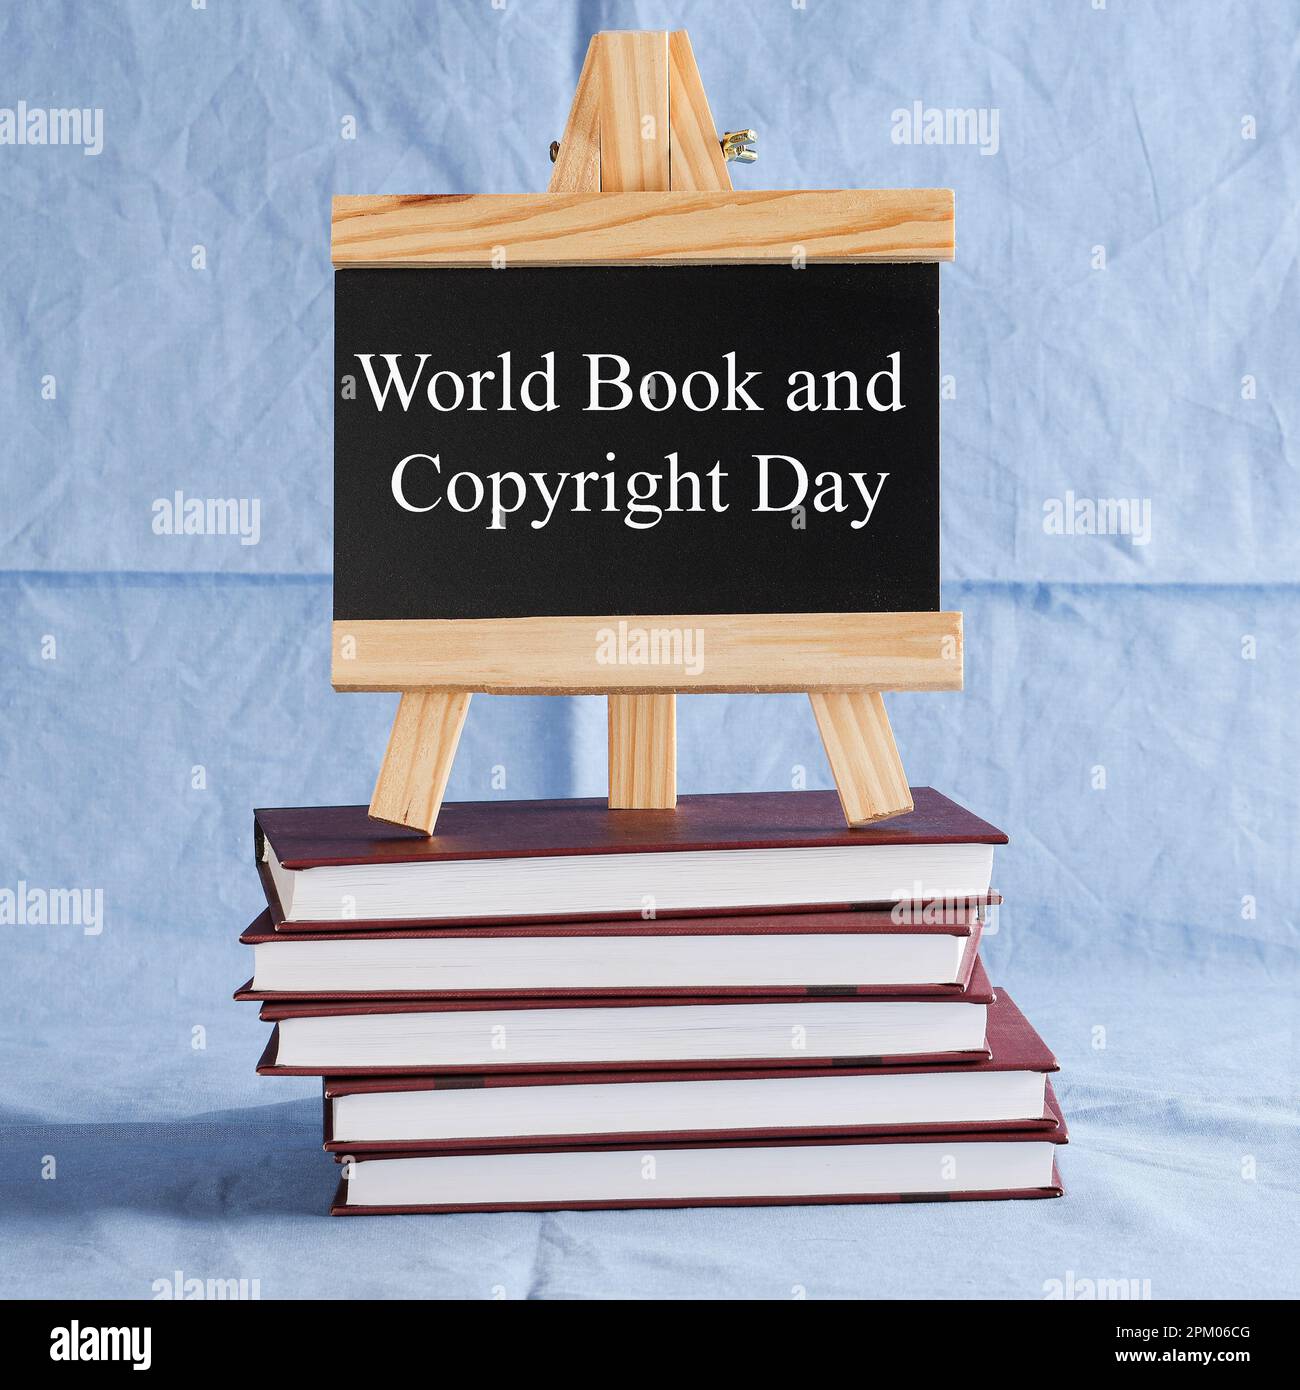 World Book and Copyright Day écrit sur tableau noir sur pile de livres sur fond bleu. réserver des vacances, concept d'éducation Banque D'Images